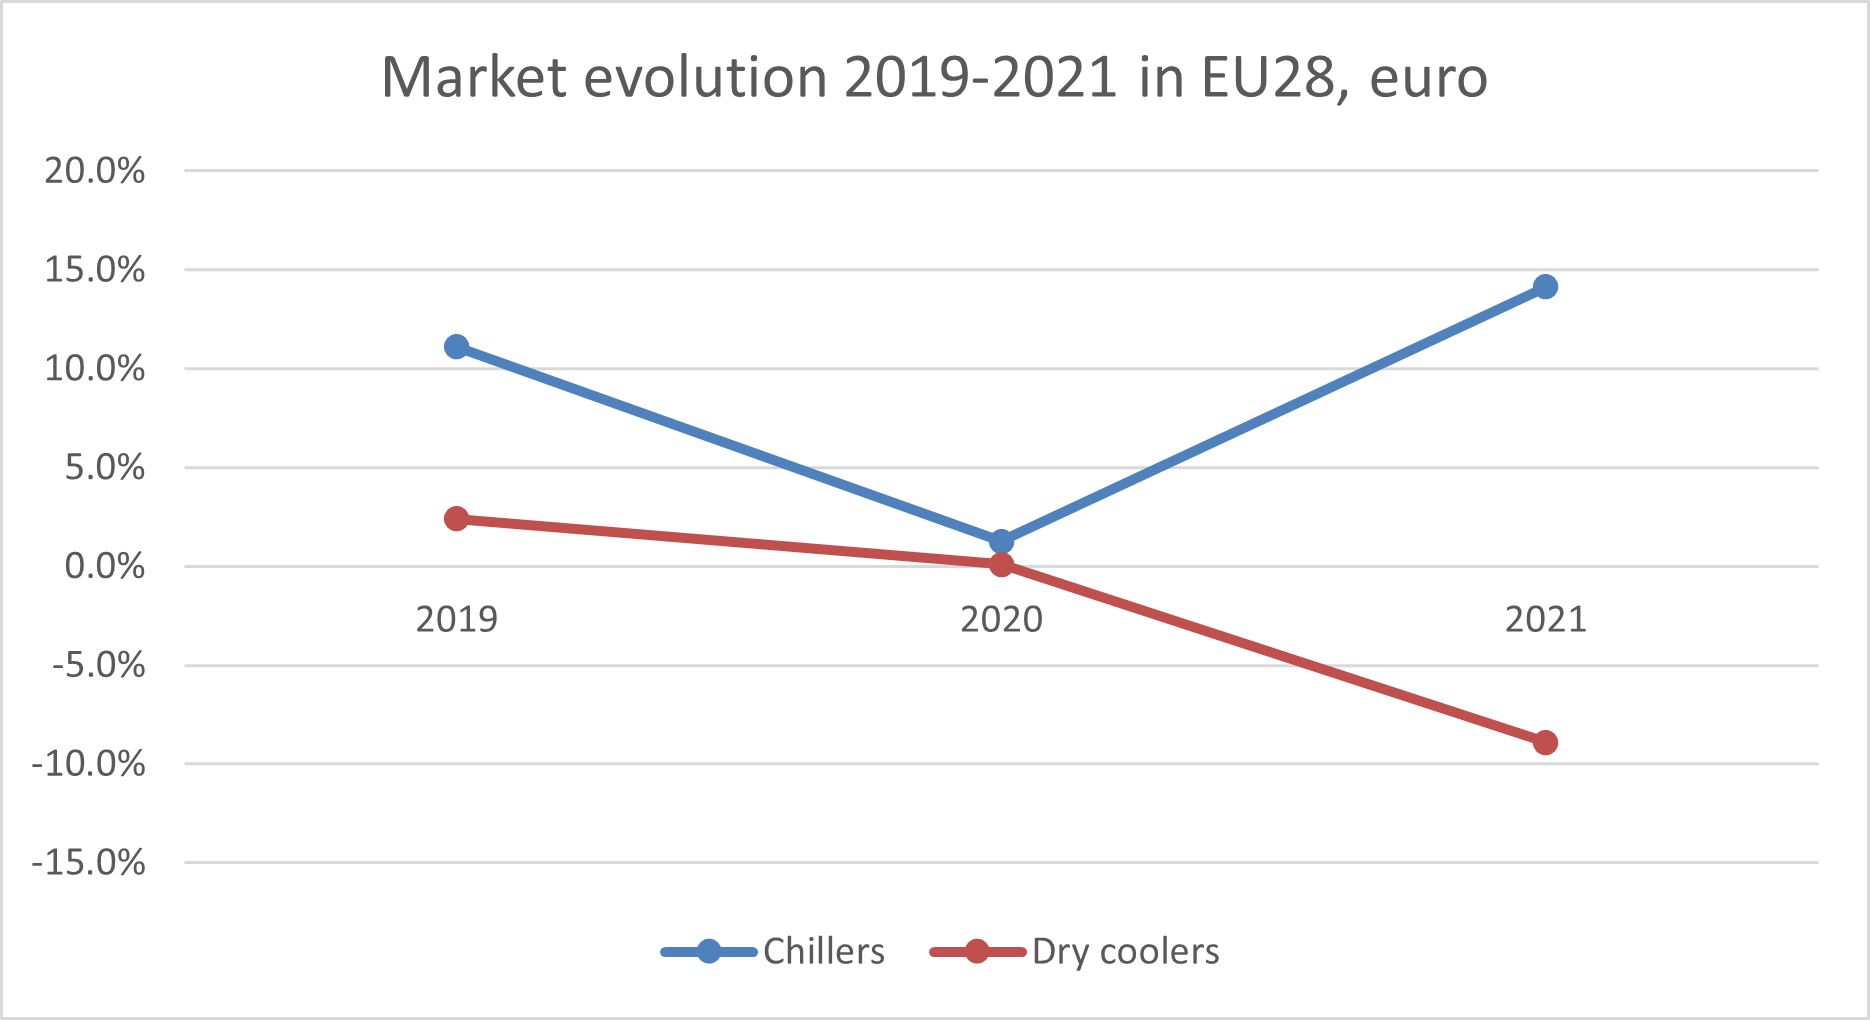 Evoluzione delle vendite di chiller e dry cooler nell'UE28, 2019-2021, da Eurovent Market intelligence